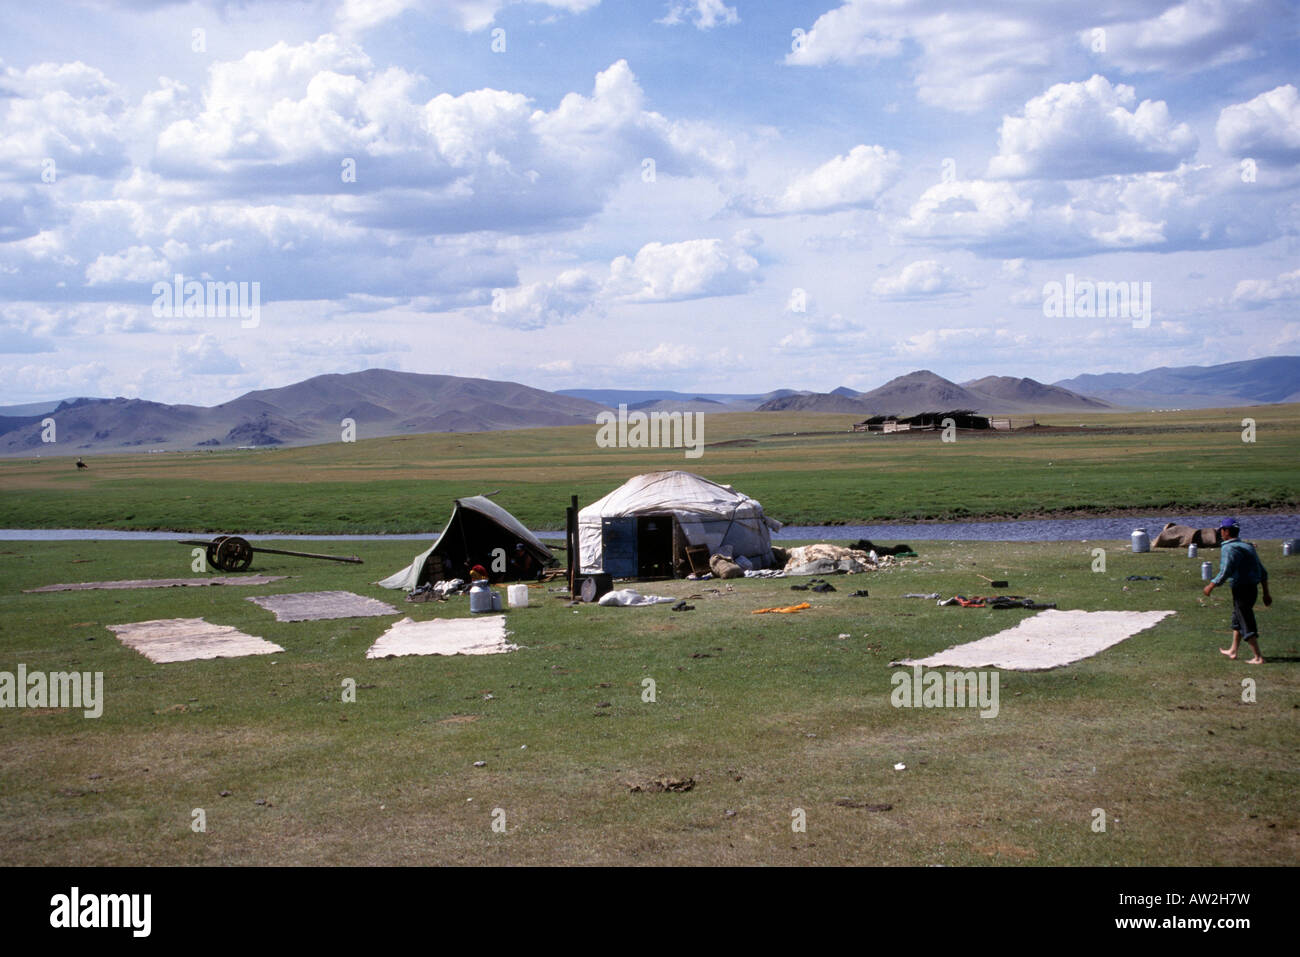 En feutre hommes près du lac Terkhiin Tsaagan Nuur Mongolie Arkhangaï Photographe Andrew Wheeler Banque D'Images